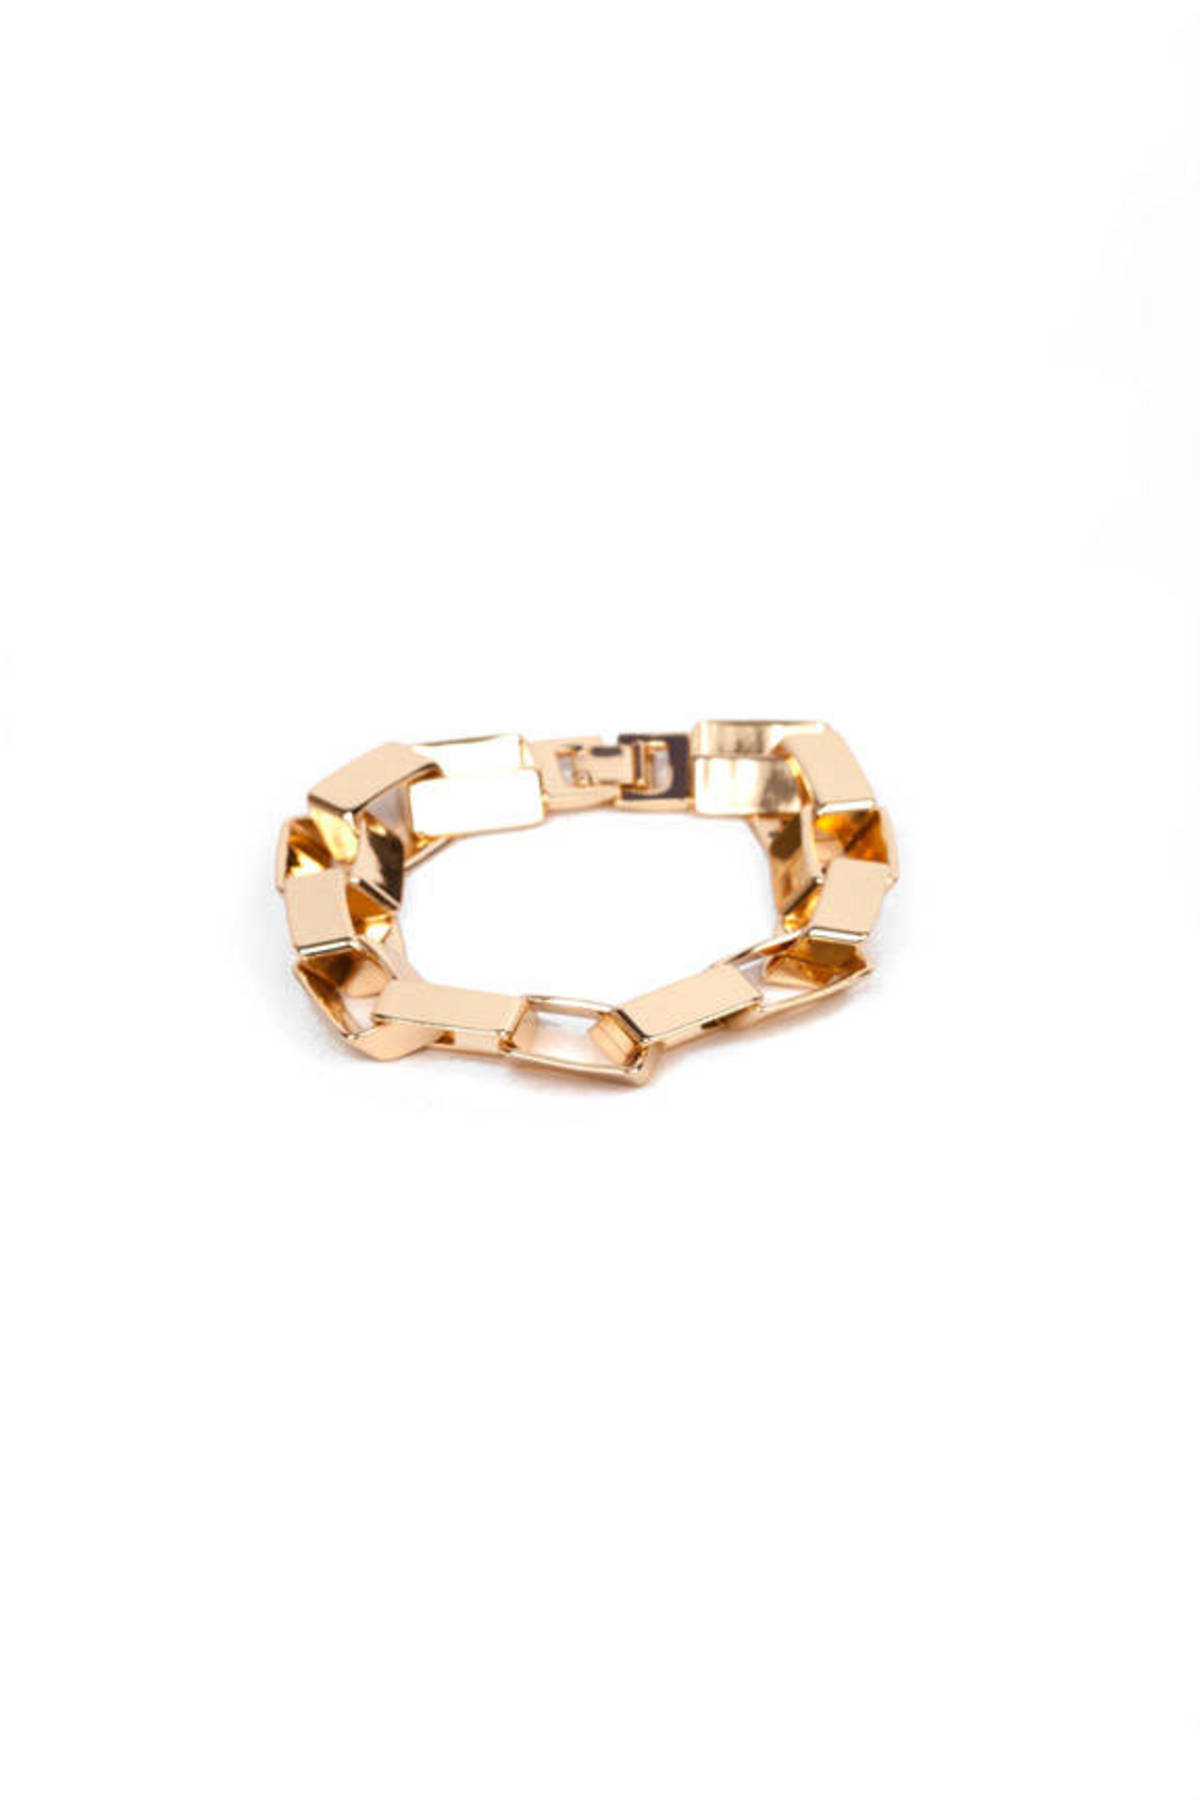 Boxing Chain Bracelet in Gold - $5 | Tobi US